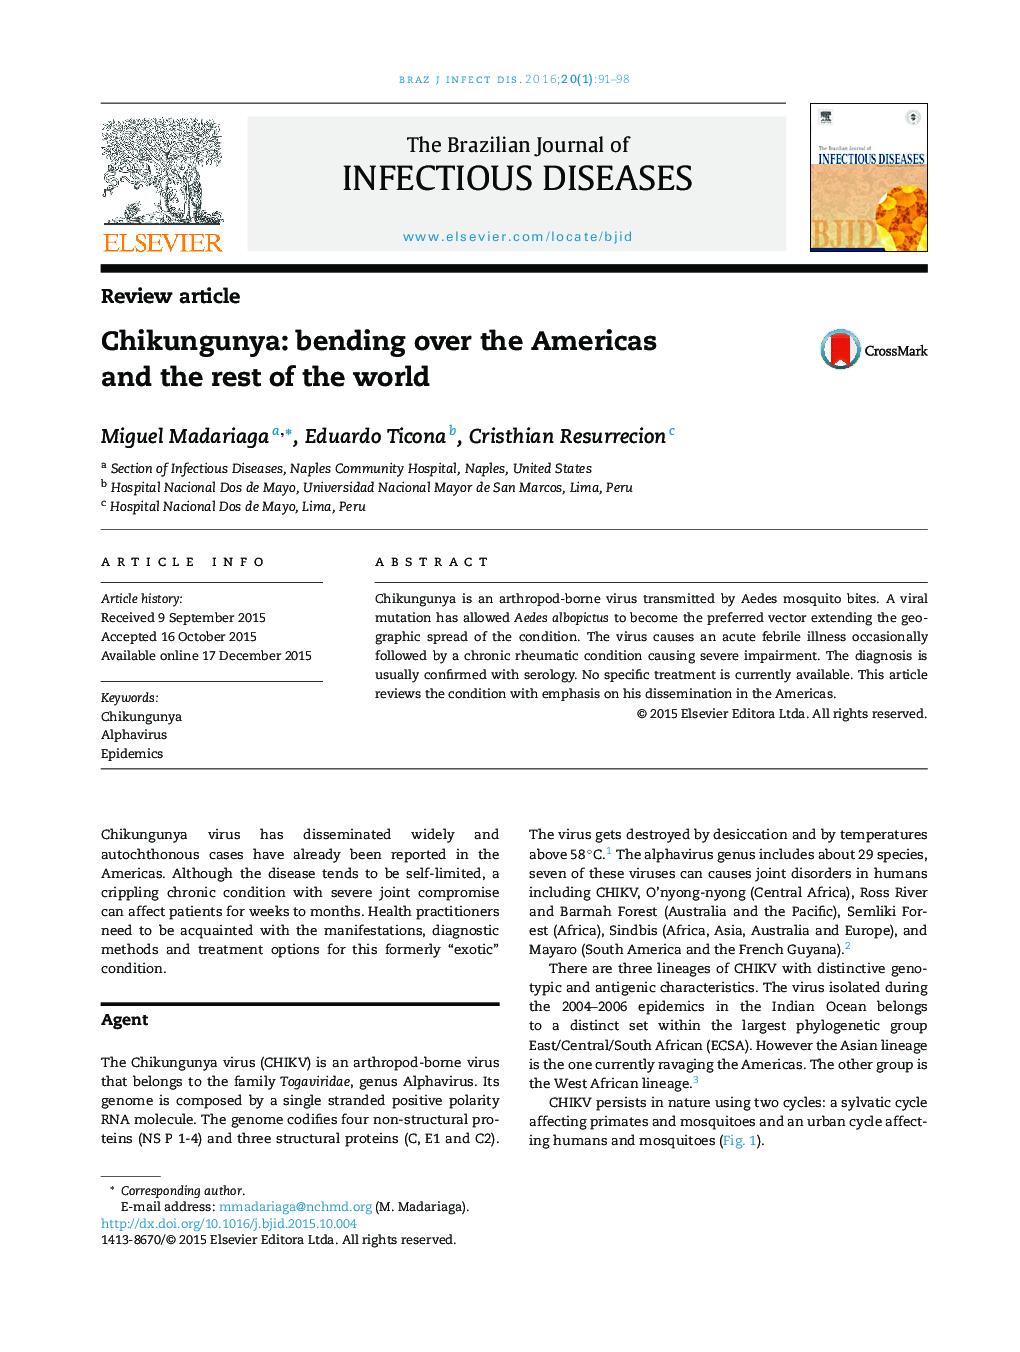 Chikungunya: کرنش در برابر آمریکا و بقیه جهان